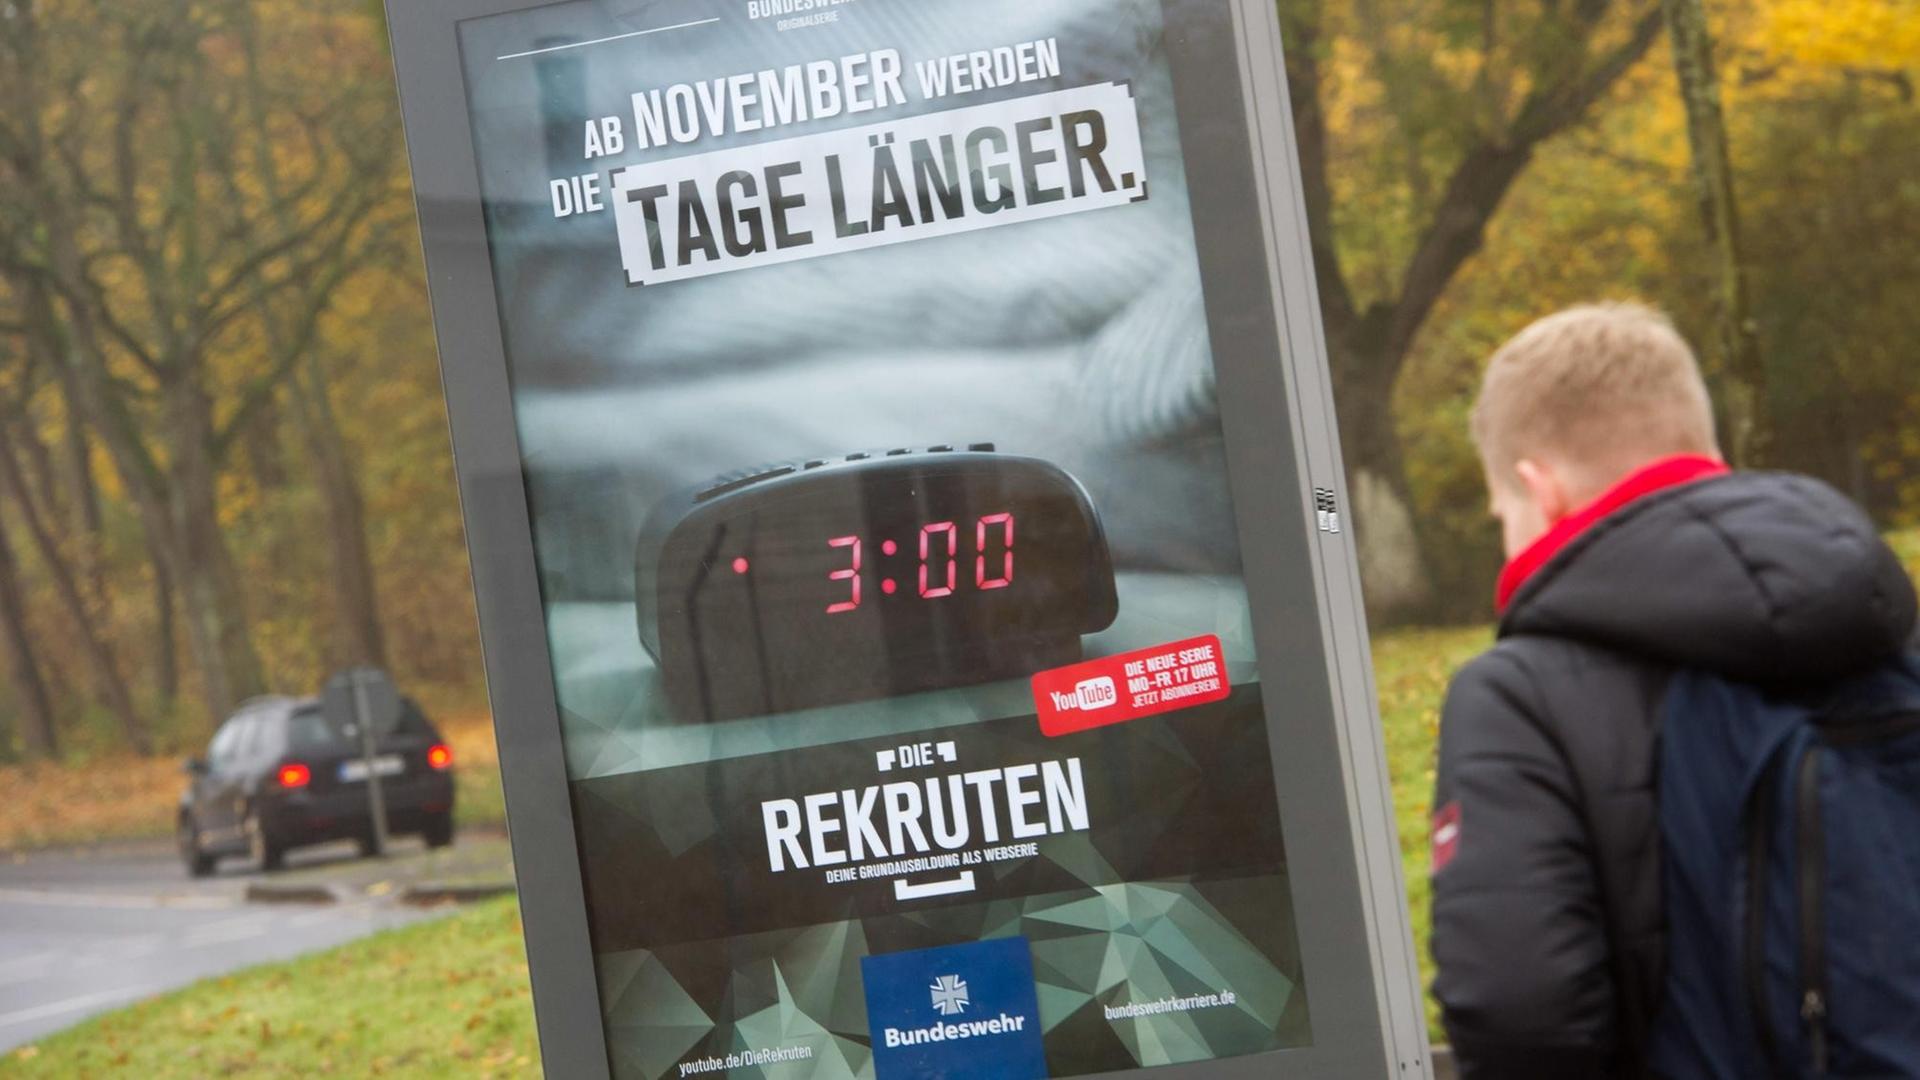 Ein Plakat der Bundeswehr zeigt einen Wecker um 3 Uhr morgens mit der Überschrift "Ab November werden die Tage länger"